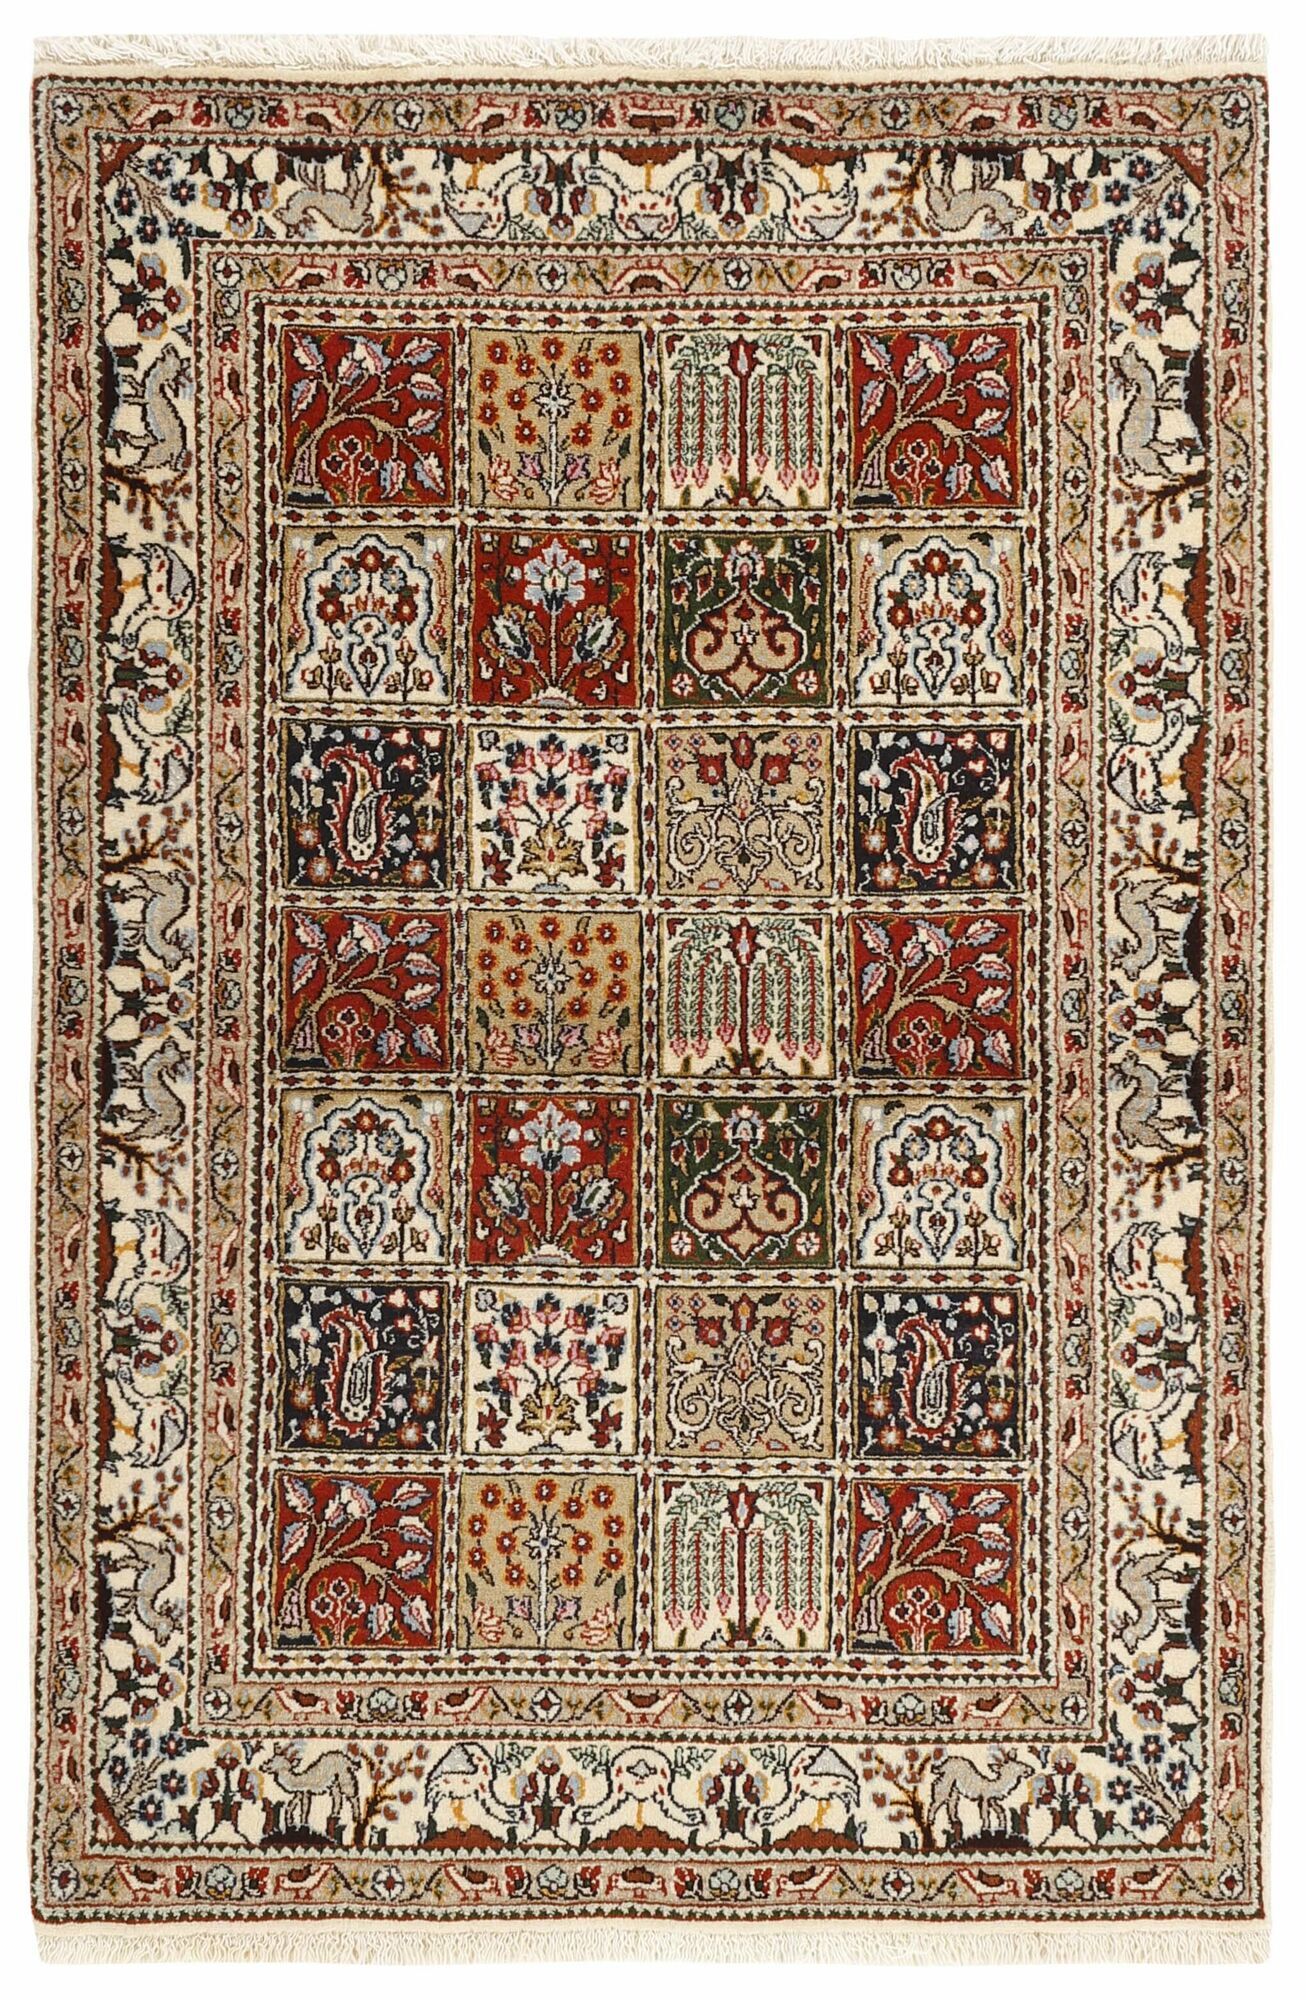 Annodato a mano. Provenienza: Persia / Iran Moud Garden Tappeto 98x150